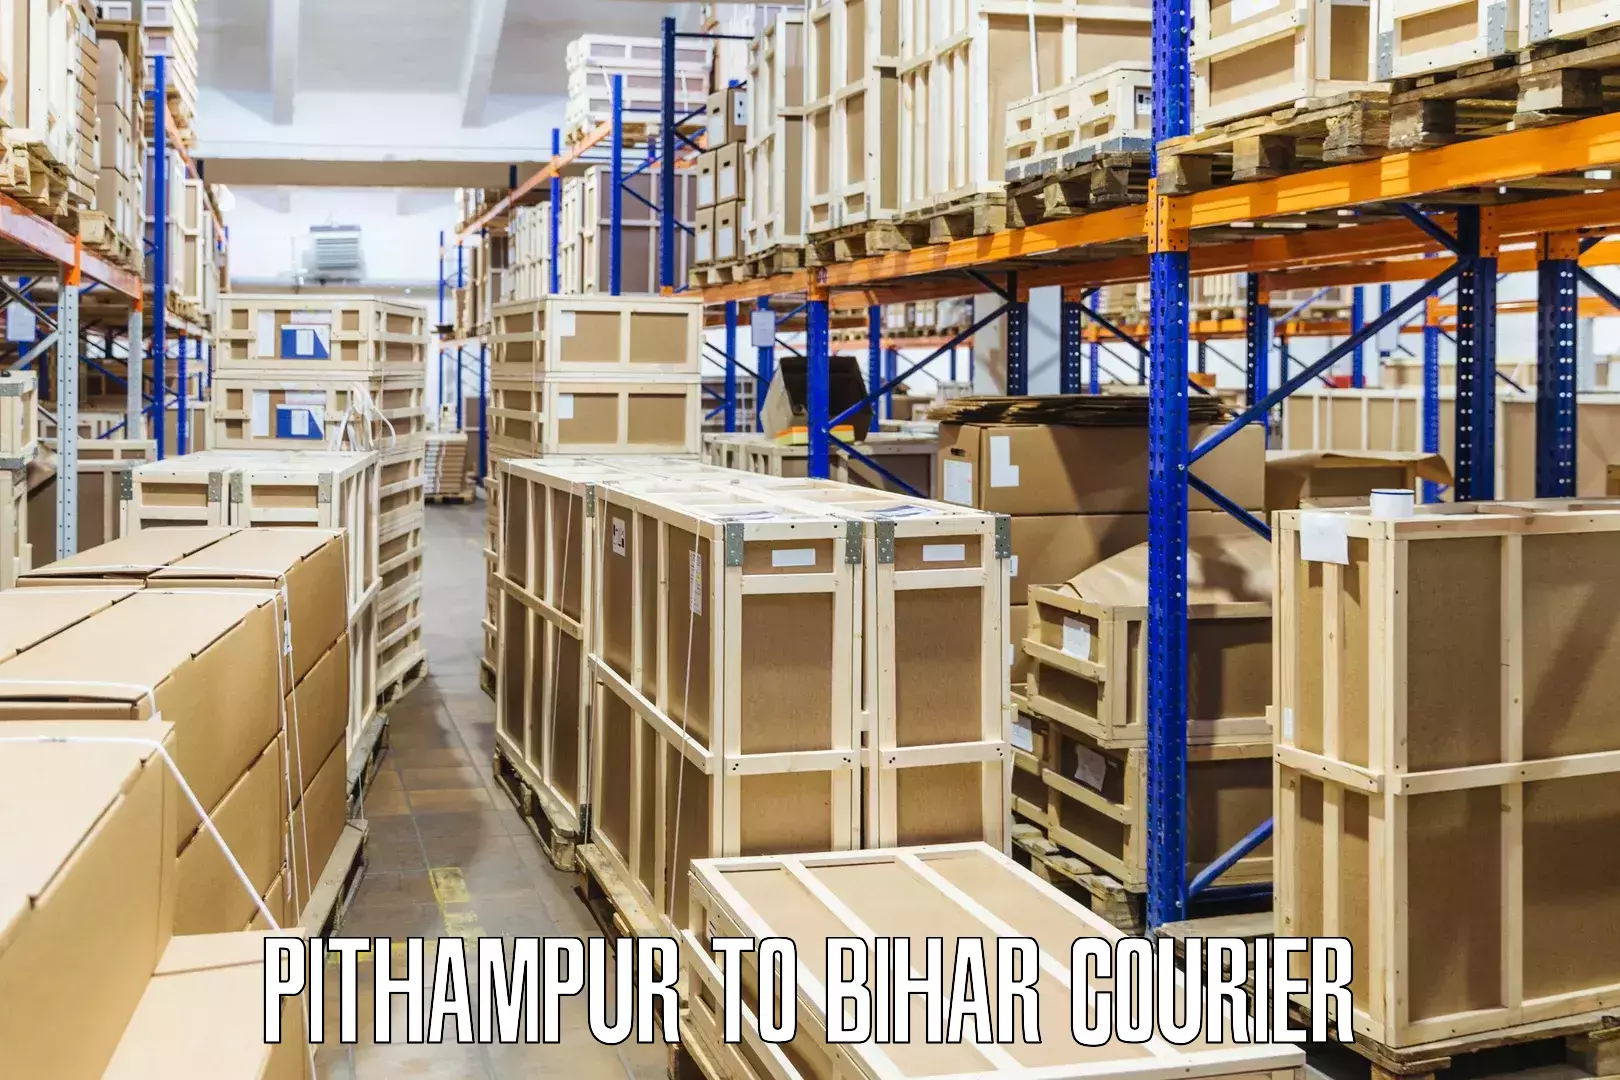 Smart shipping technology Pithampur to Barachati